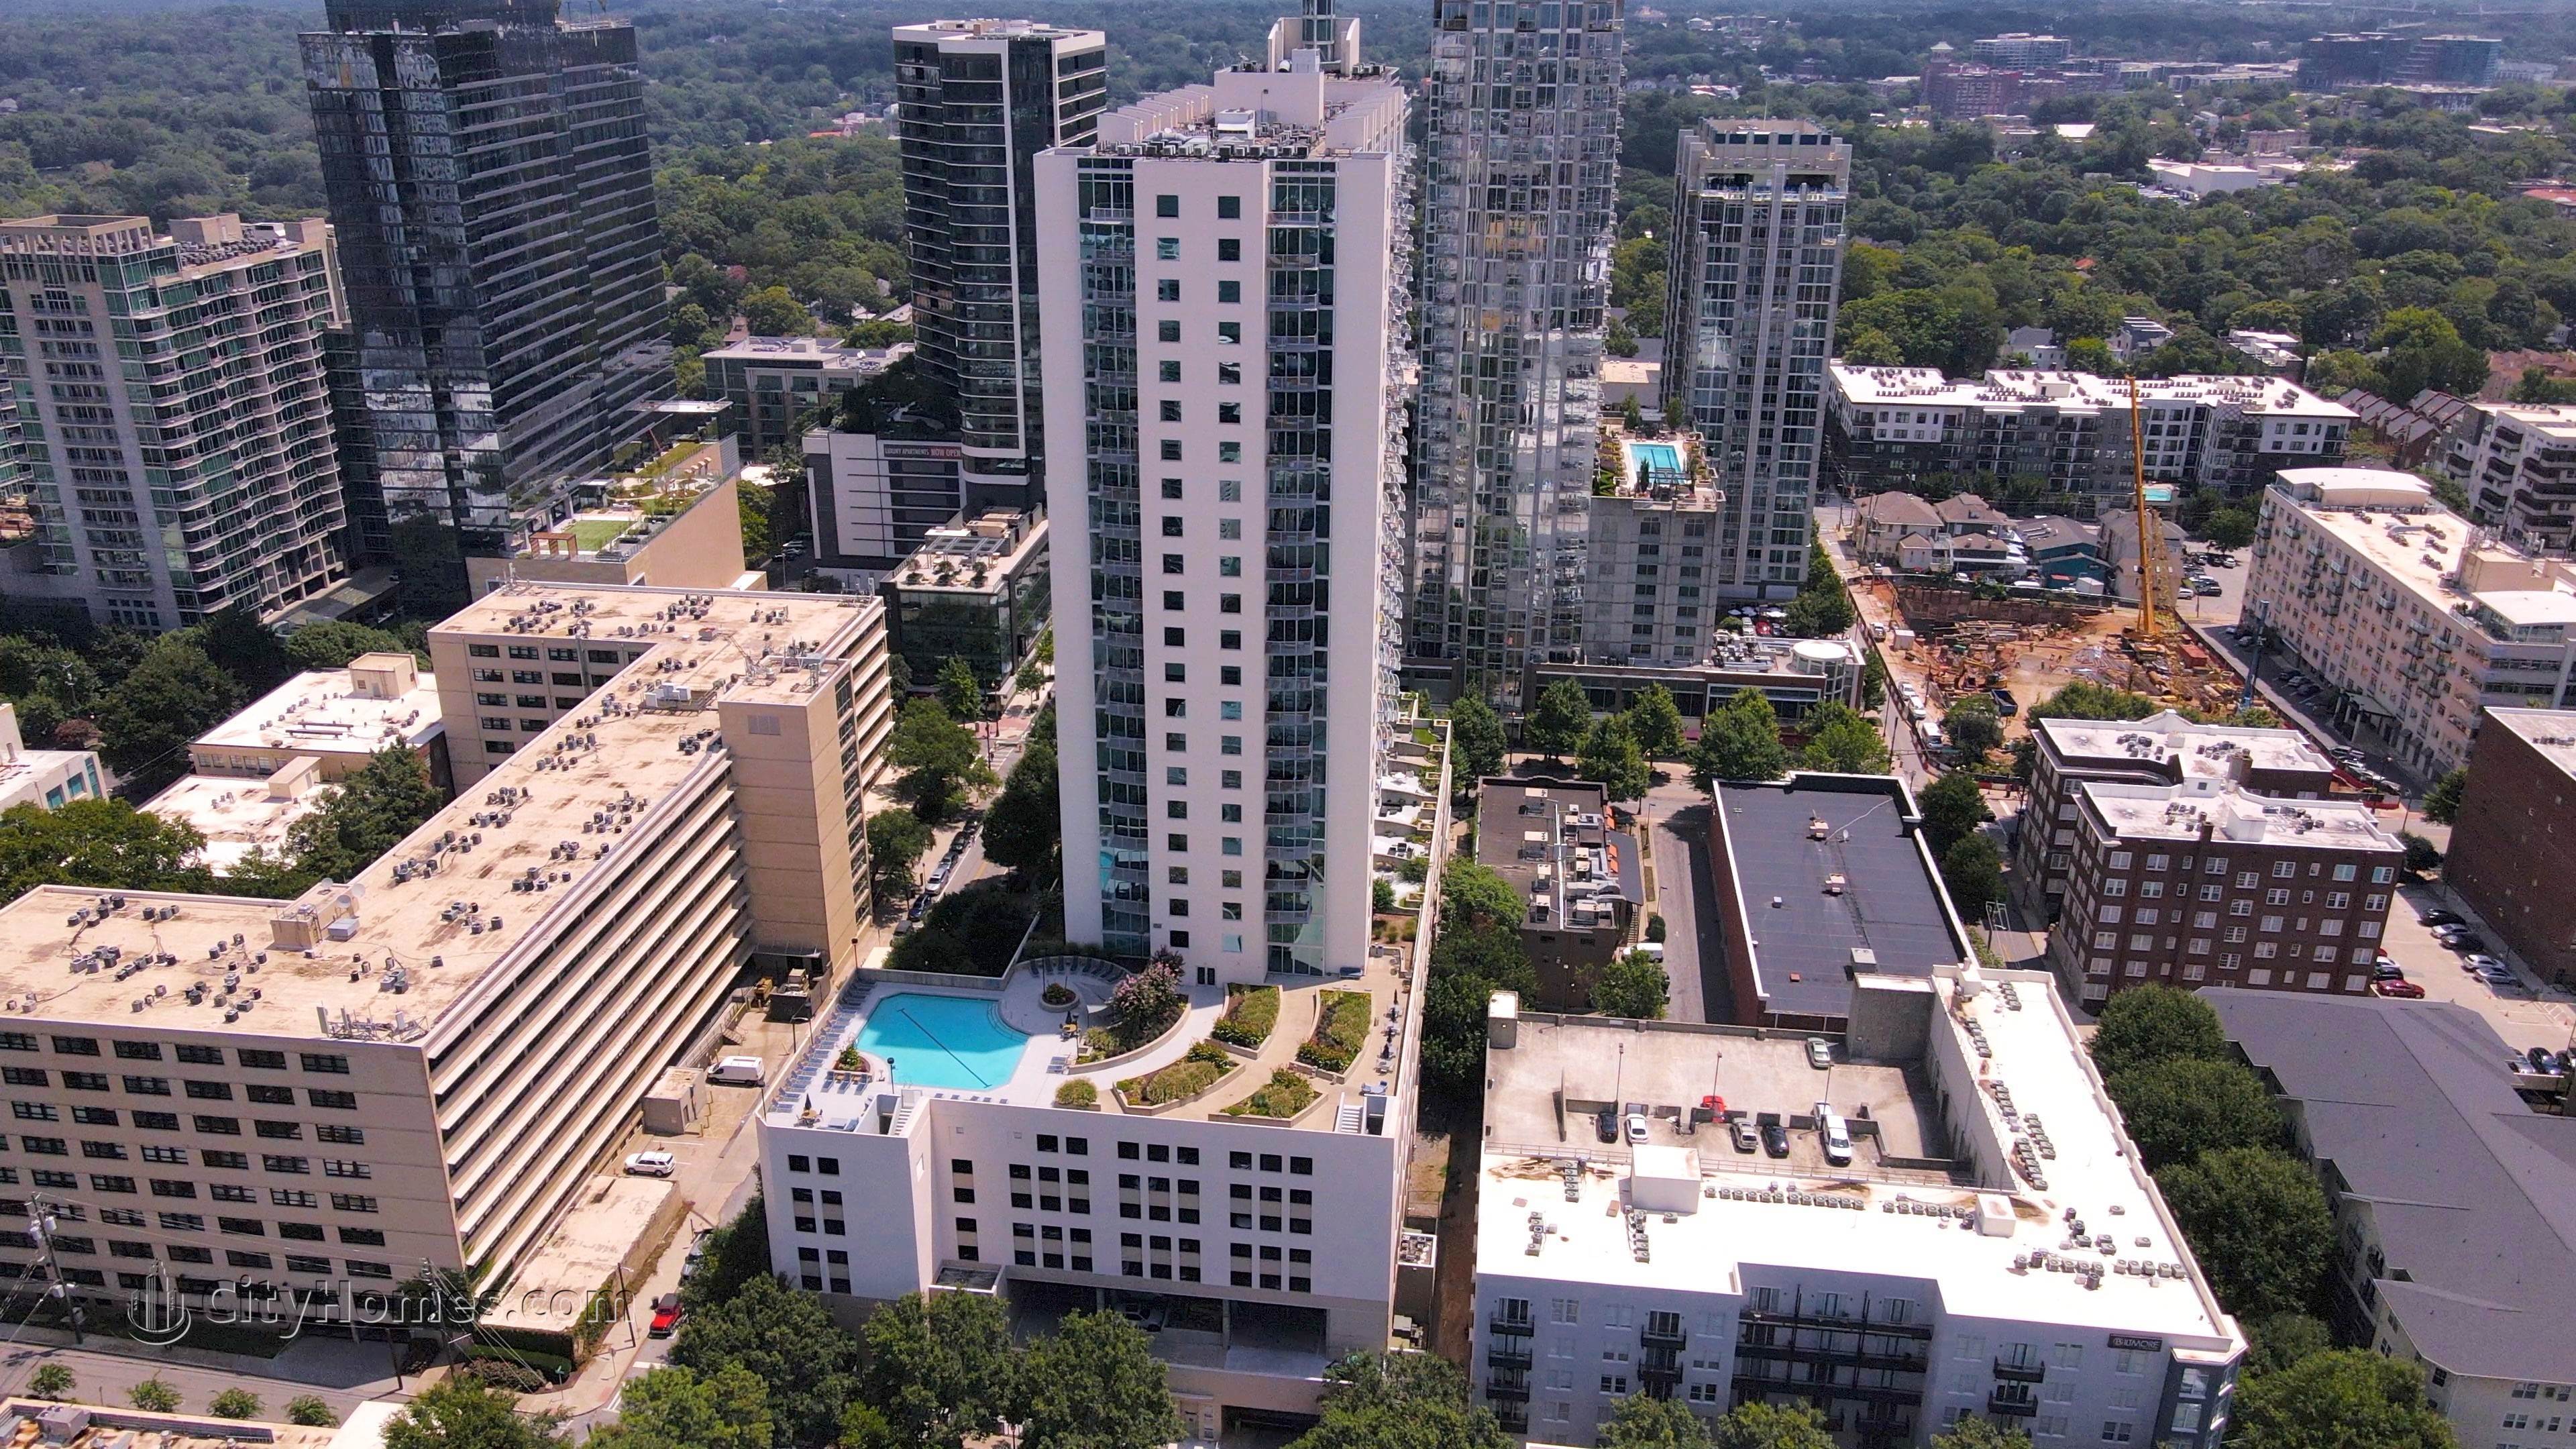 3. Spire Condominiums edificio en 860 Peachtree St NE, Greater Midtown, Atlanta, GA 30308